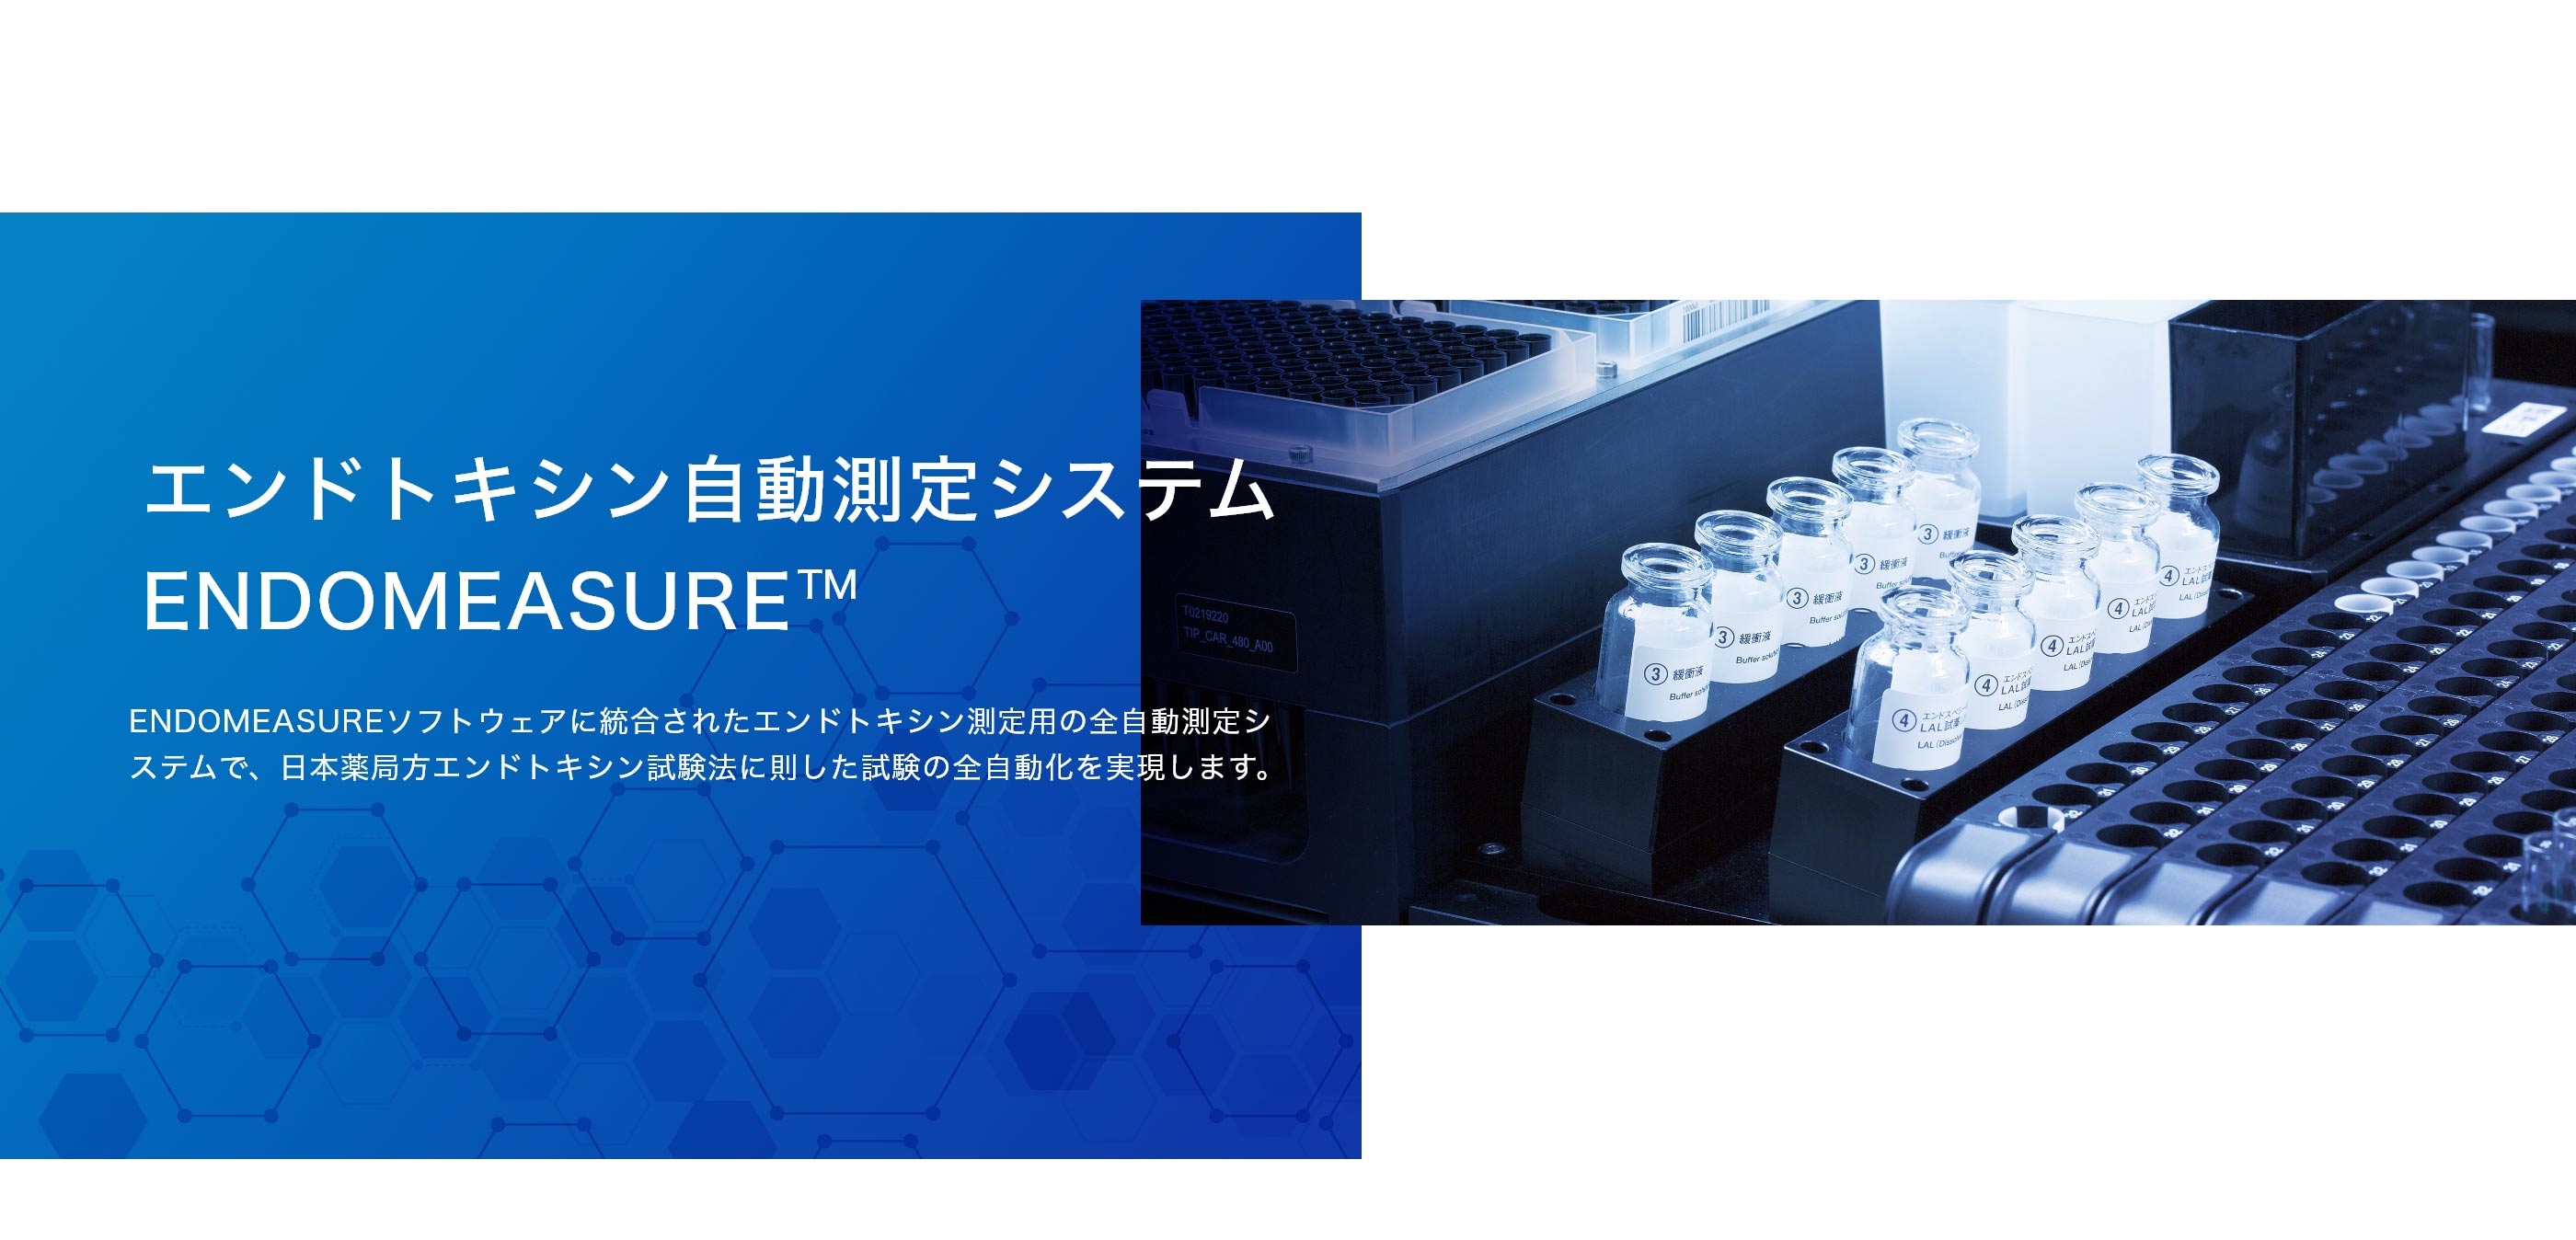 エンドトキシン自動測定システム ENDOMEASURE ™ 、ENDOMEASUREソフトウェアに統合されたエンドトキシン測定用の全自動測定システムで、日本薬局方エンドトキシン試験法に則した試験の全自動化を実現します。